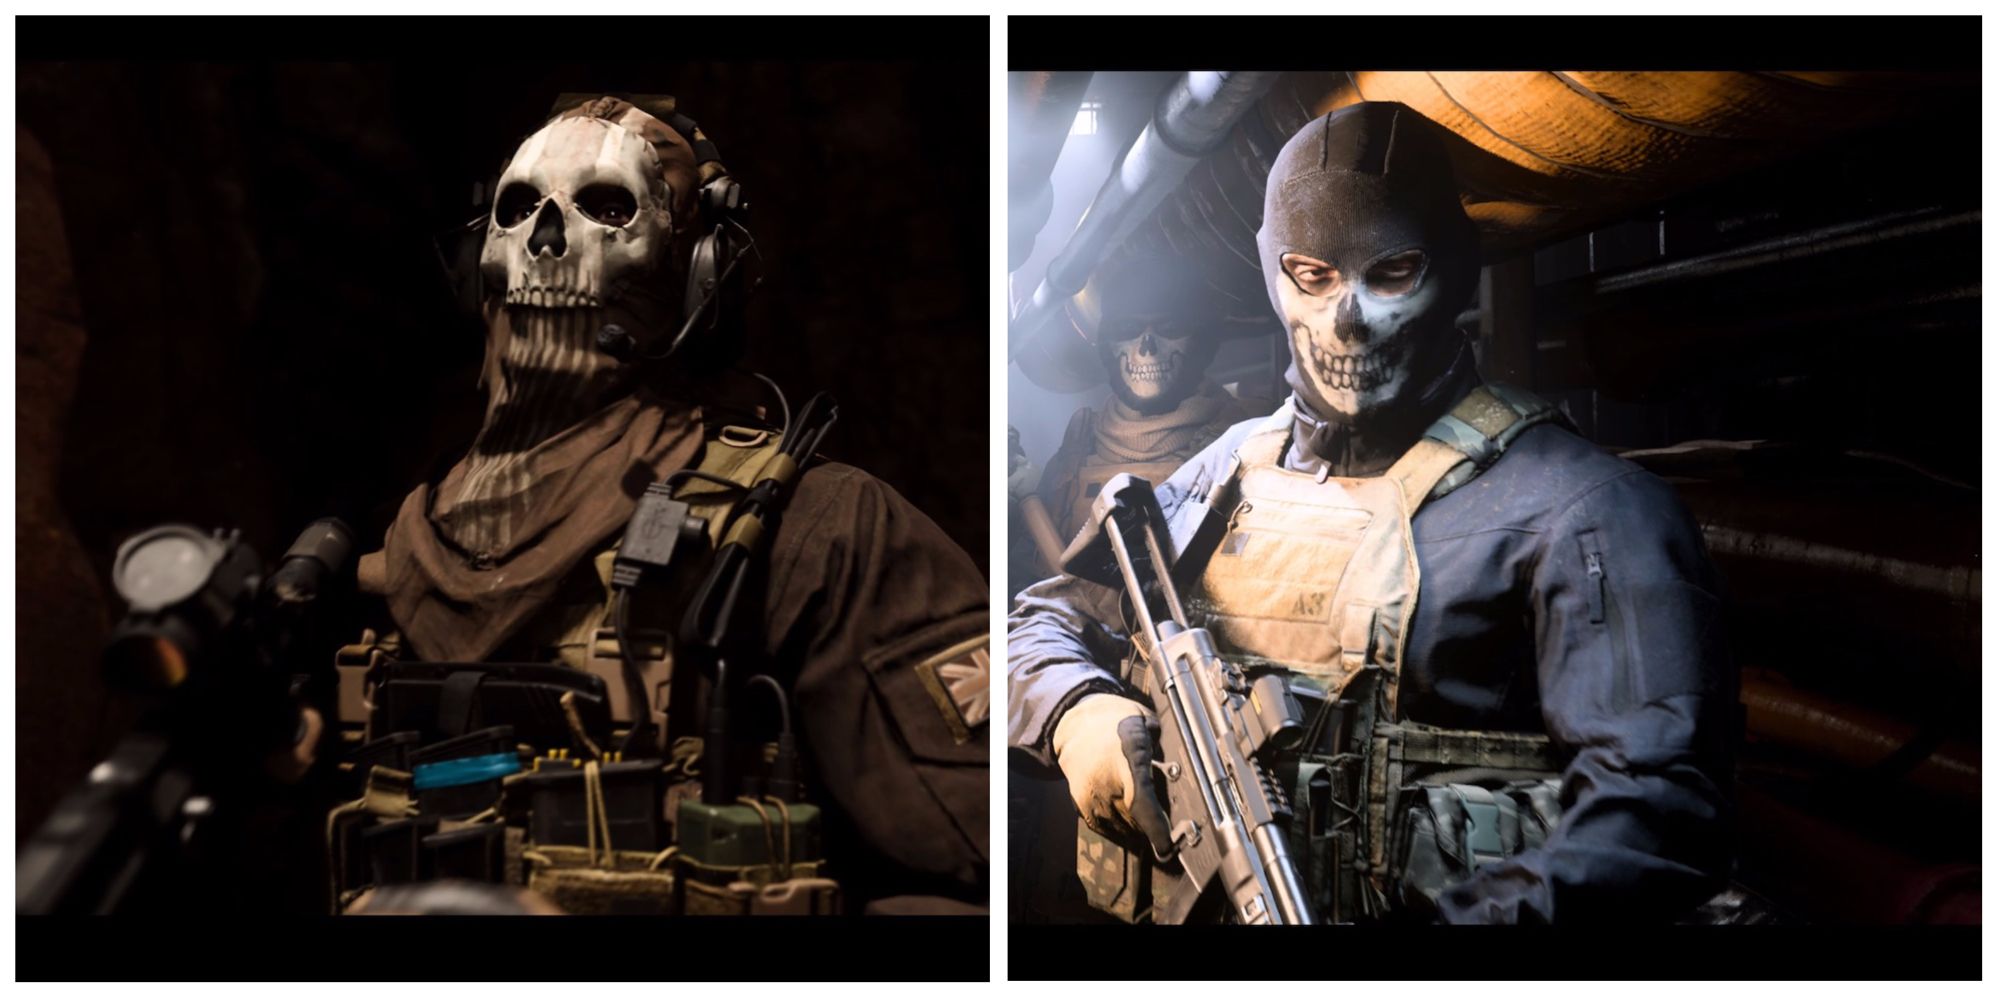 Modern Warfare 2 player unmasks Ghost